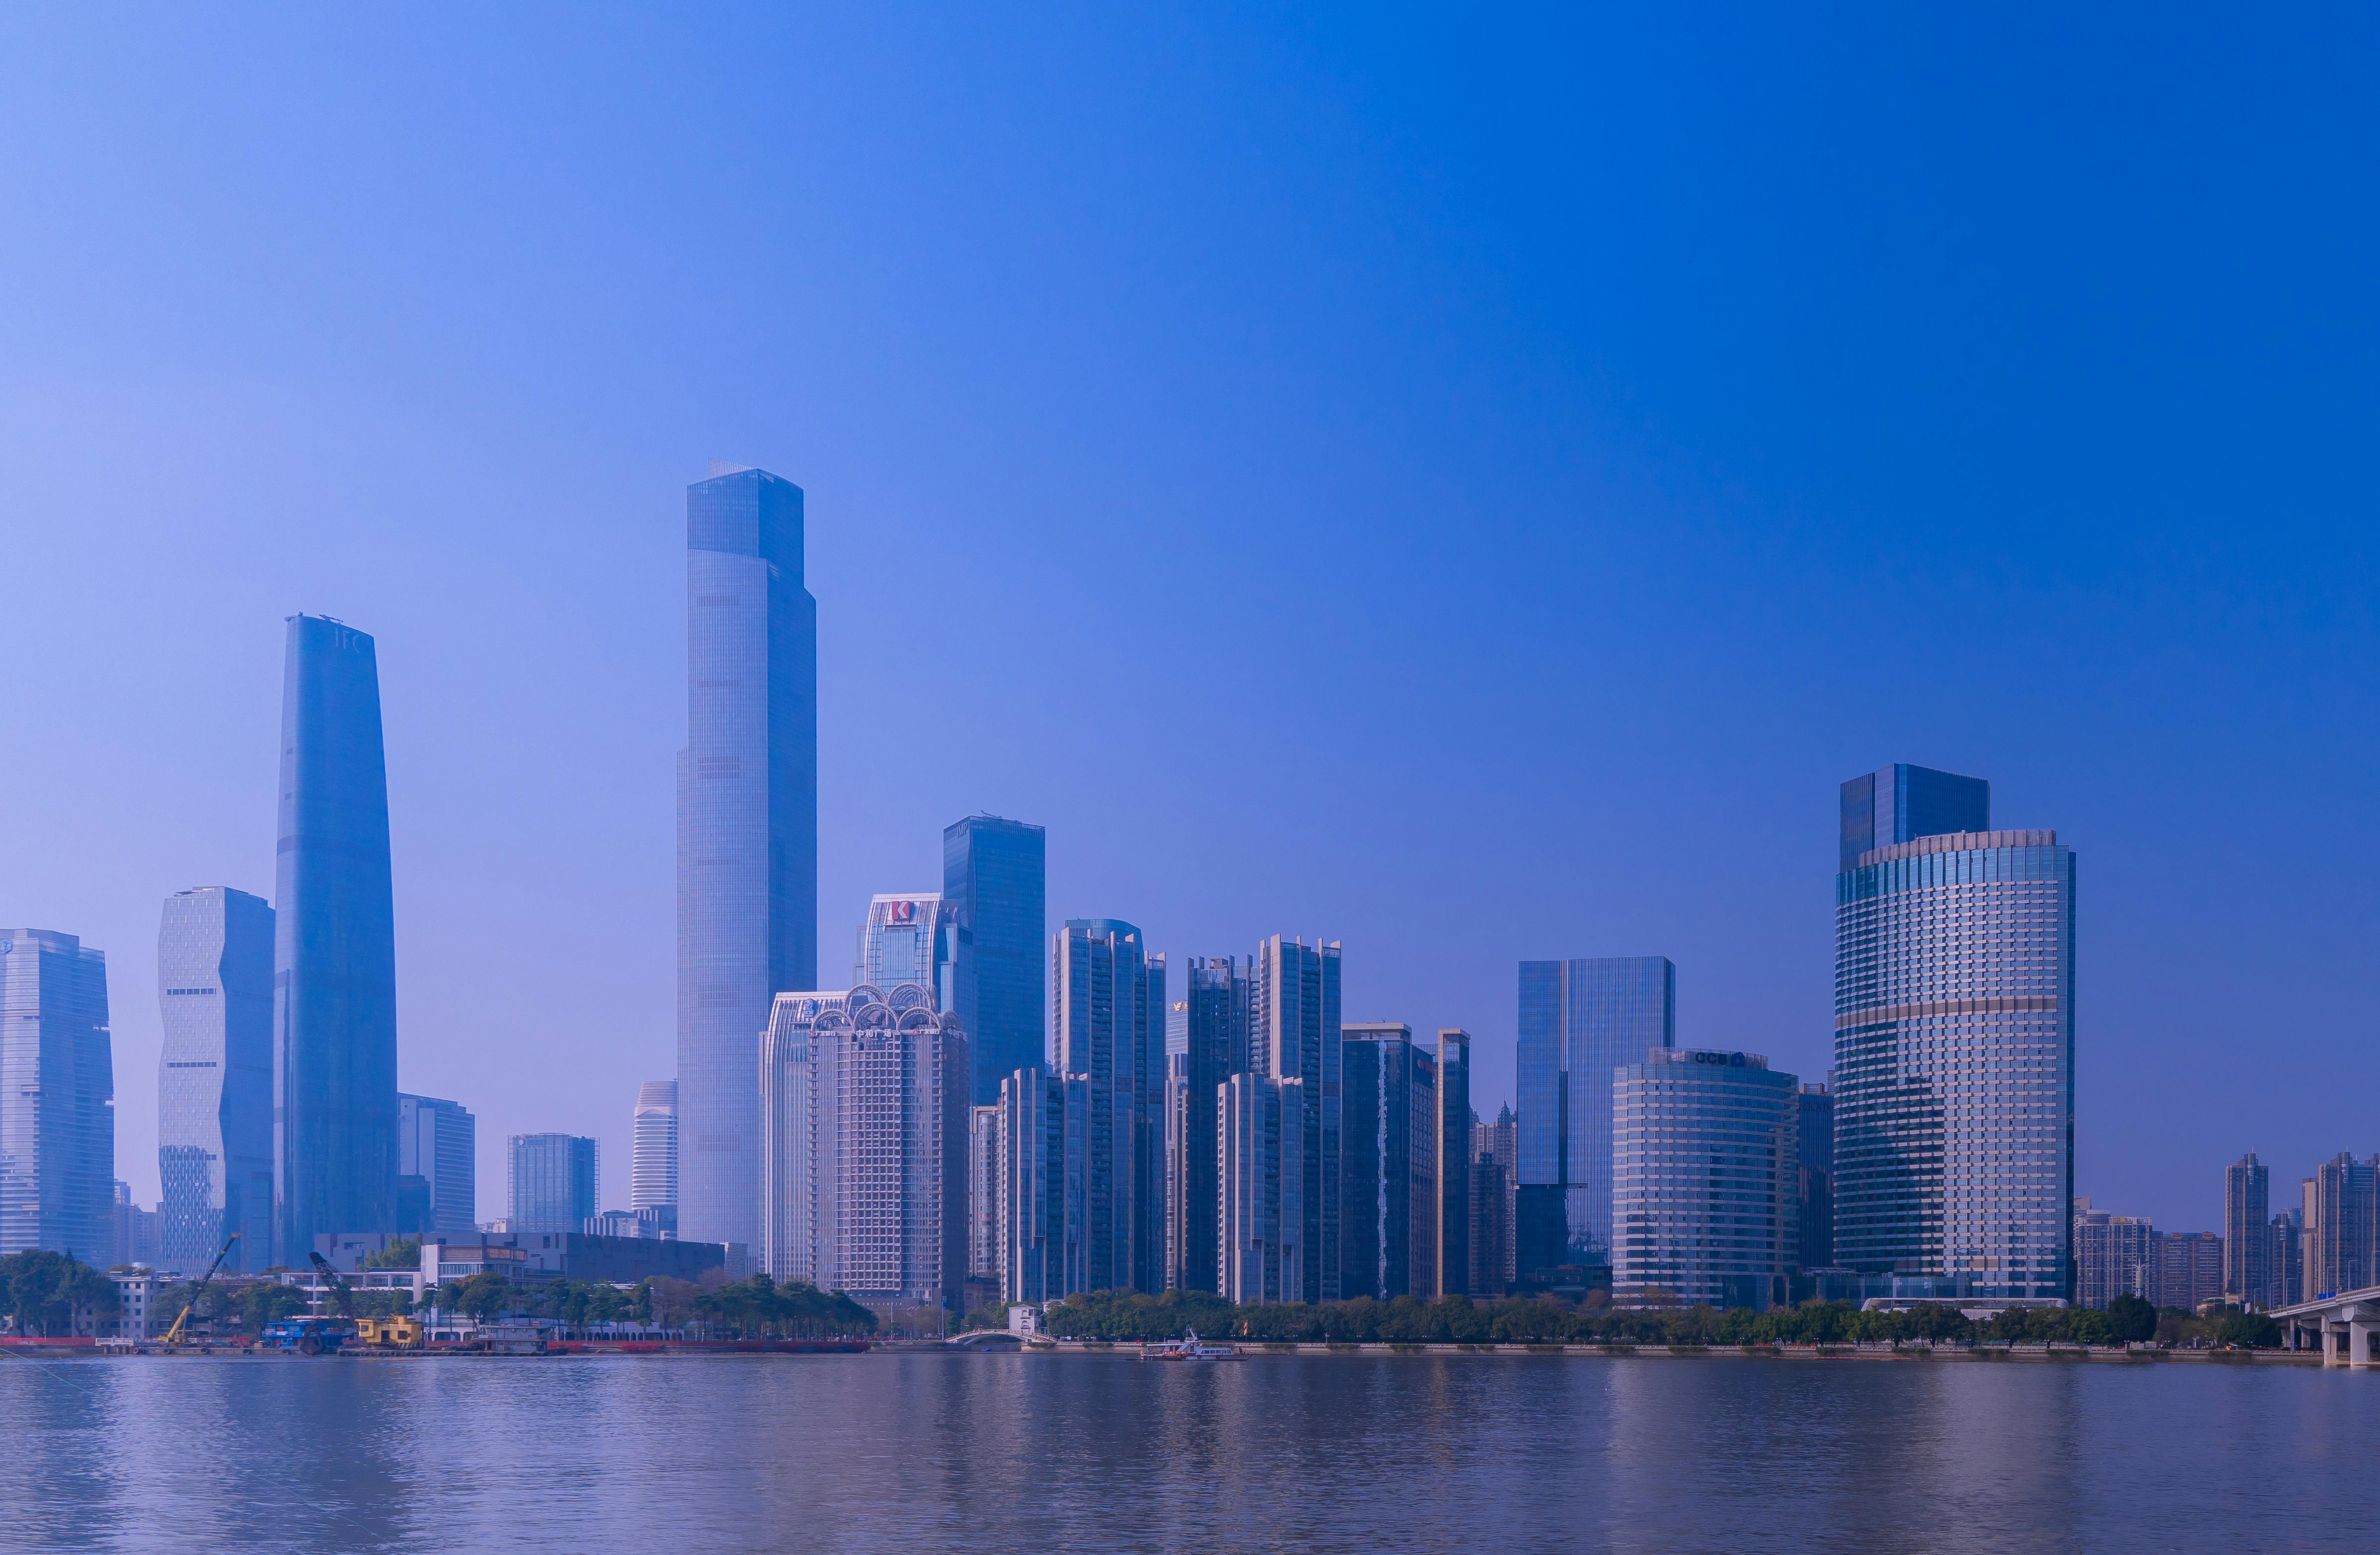 Skyscrapers in Guangzhou in China